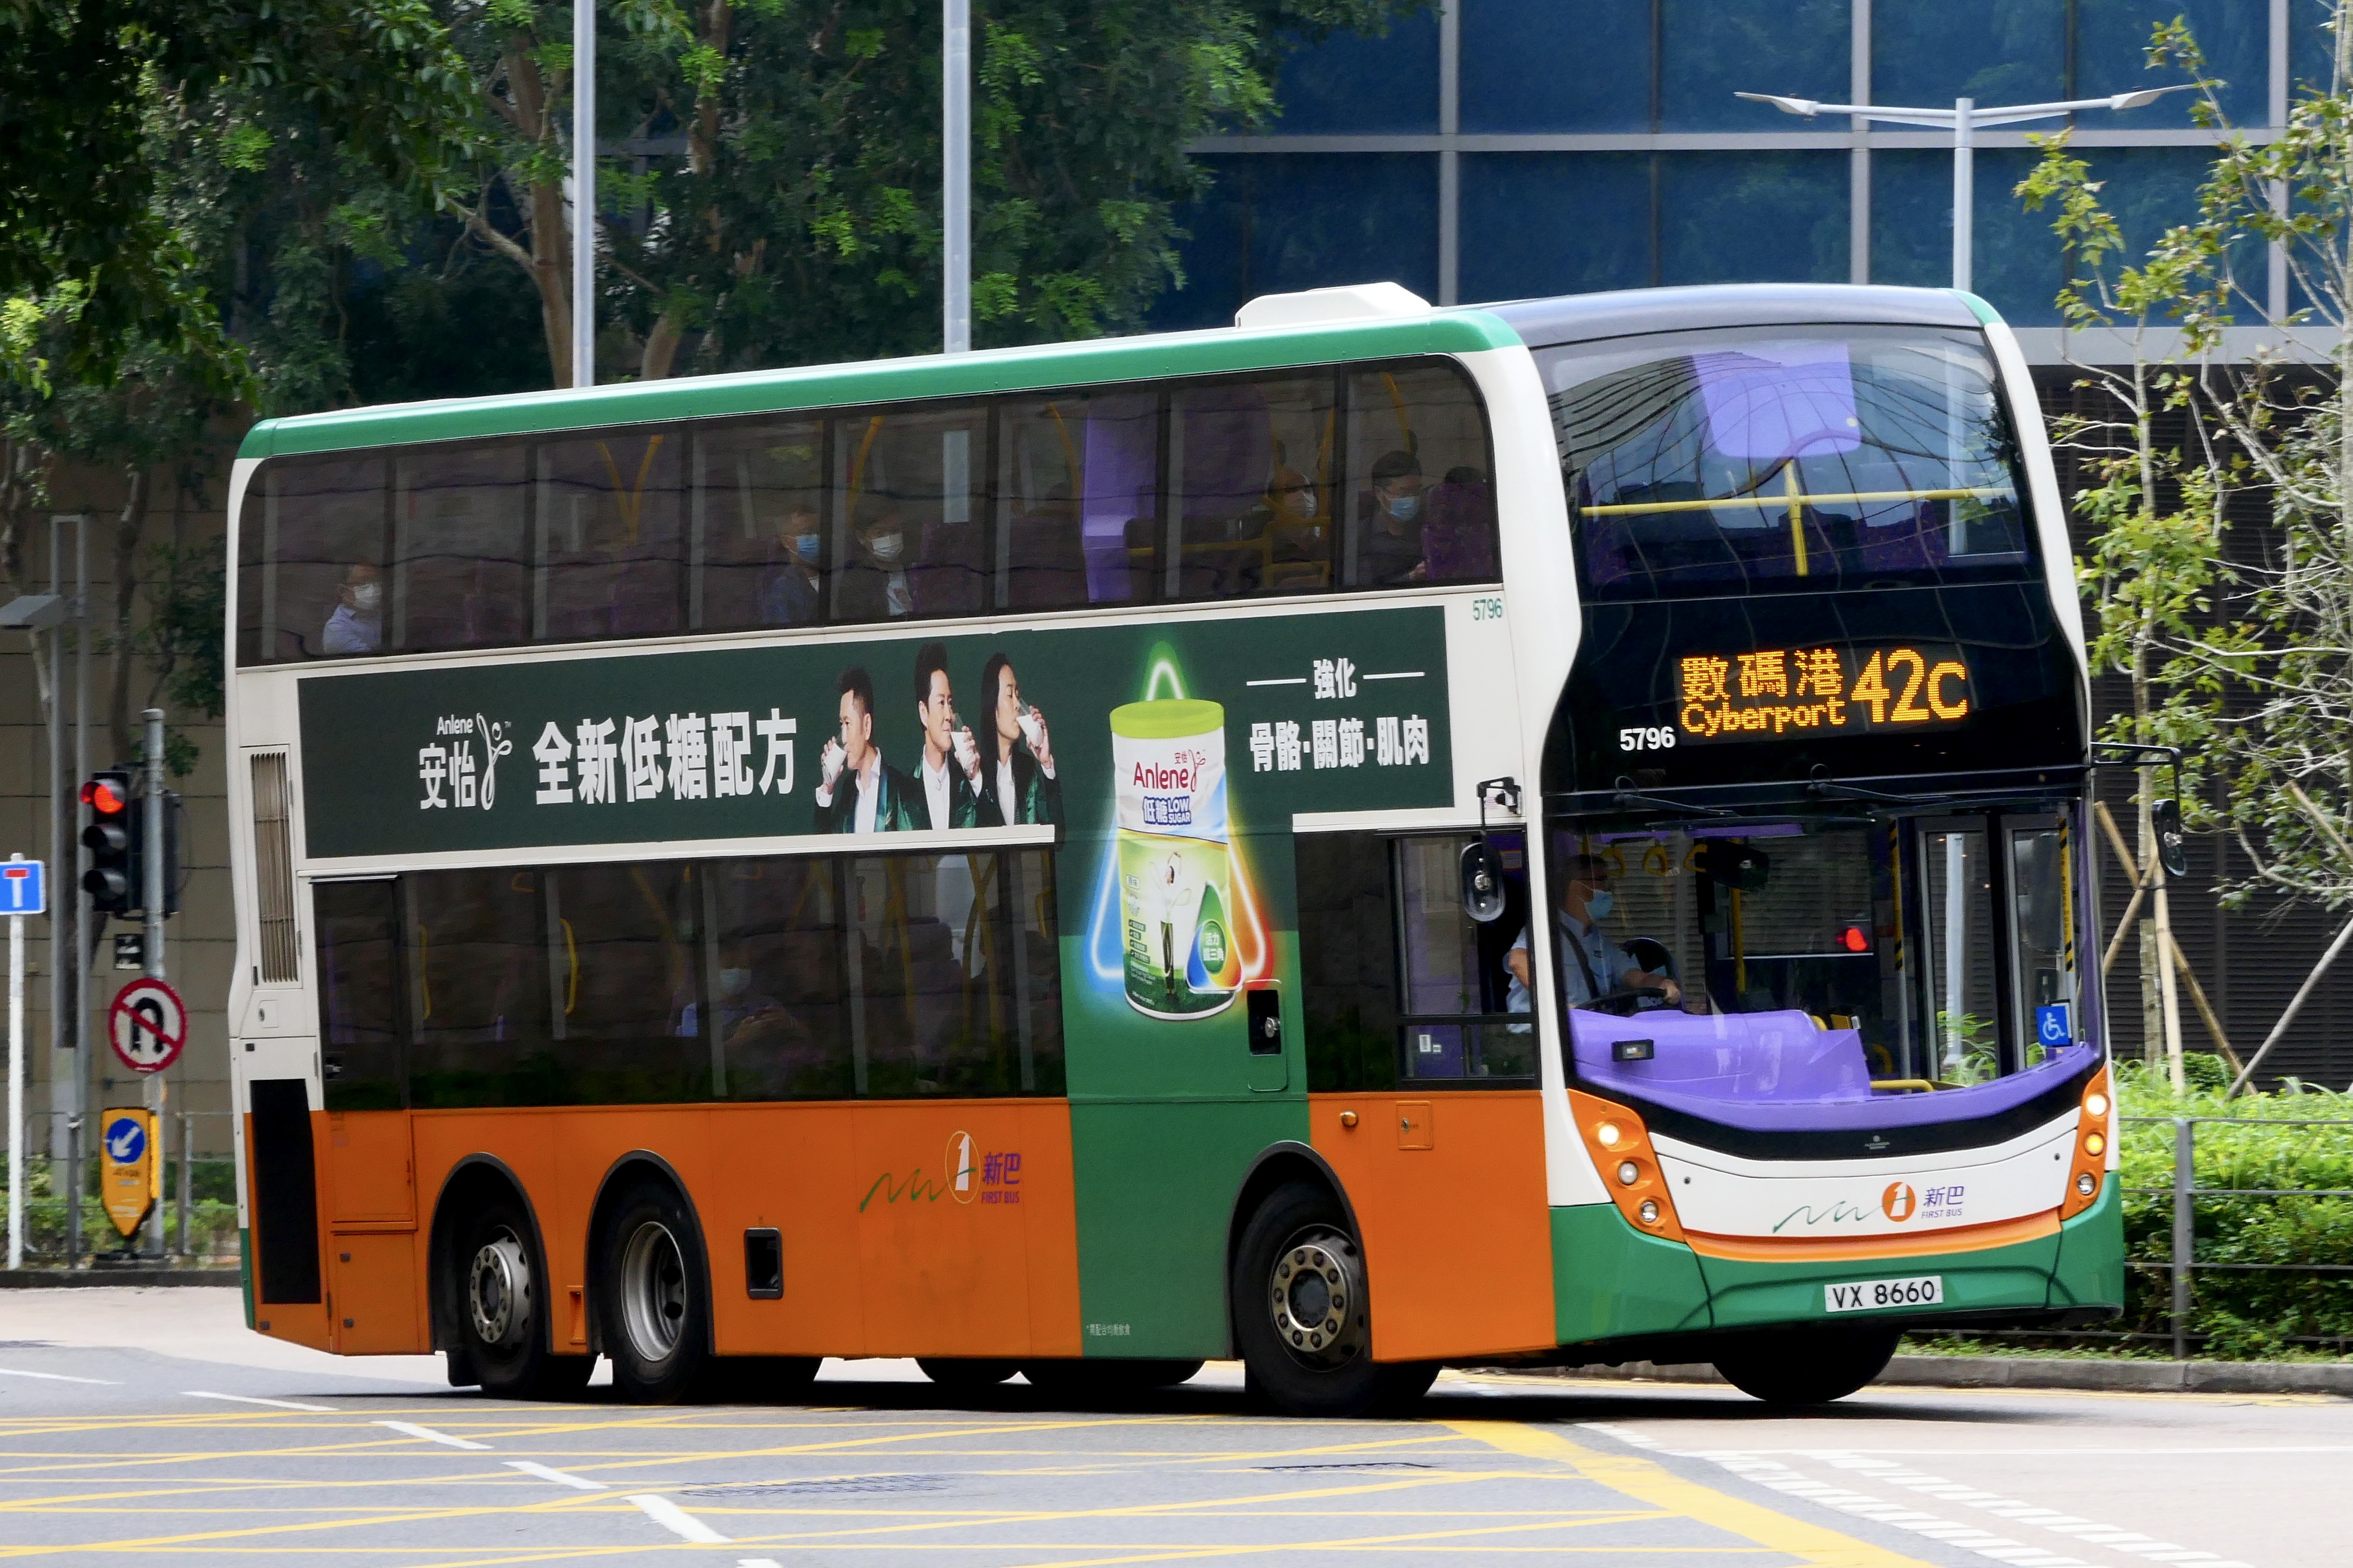 城巴42C線, 香港巴士大典